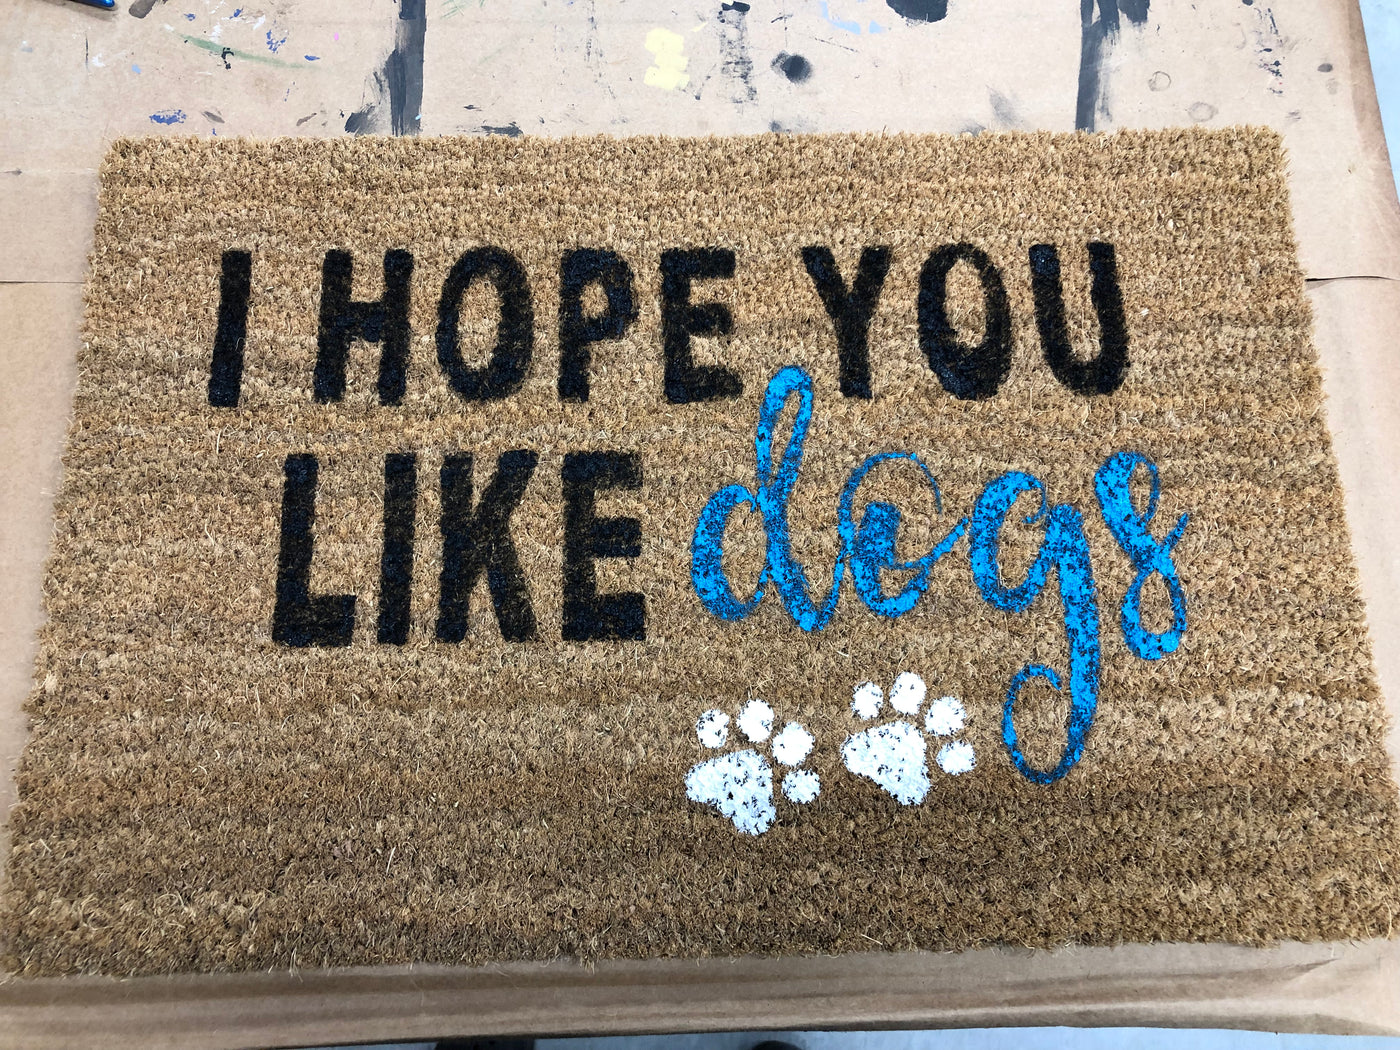 Personalized Doormats